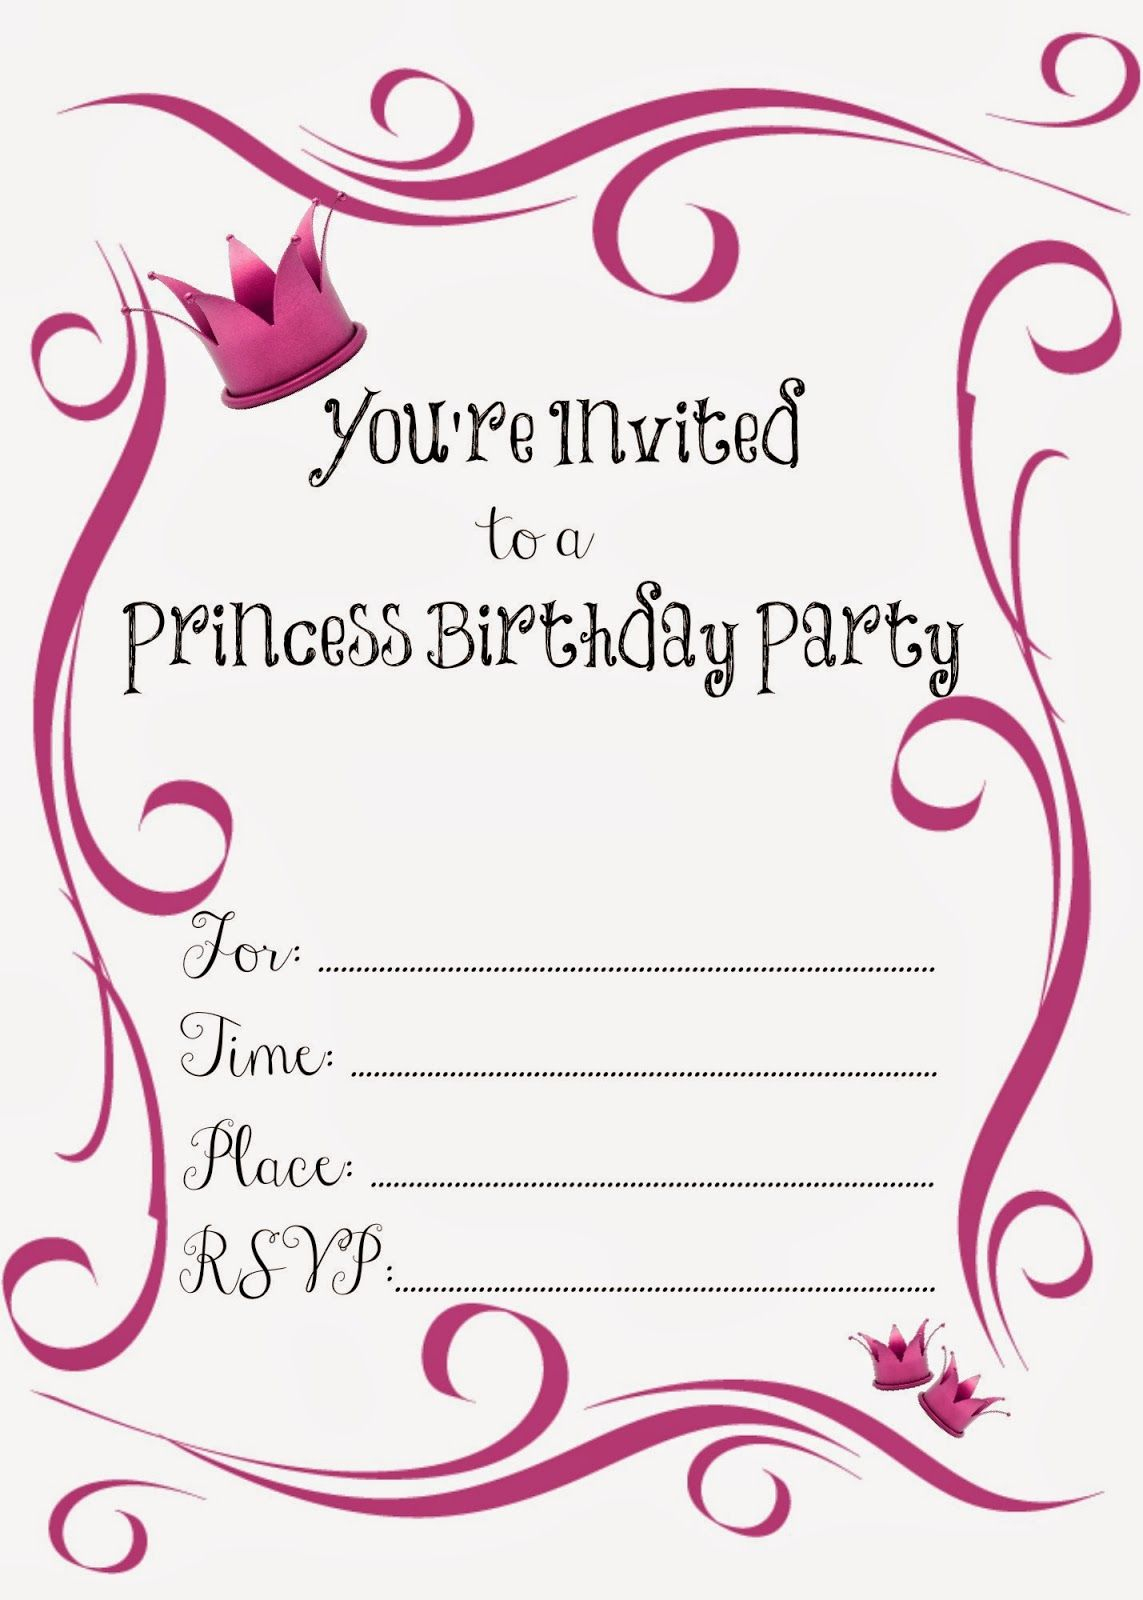 Free Printable Princess Birthday Party Invitations #freeprintables - Free Printable Princess Invitation Cards